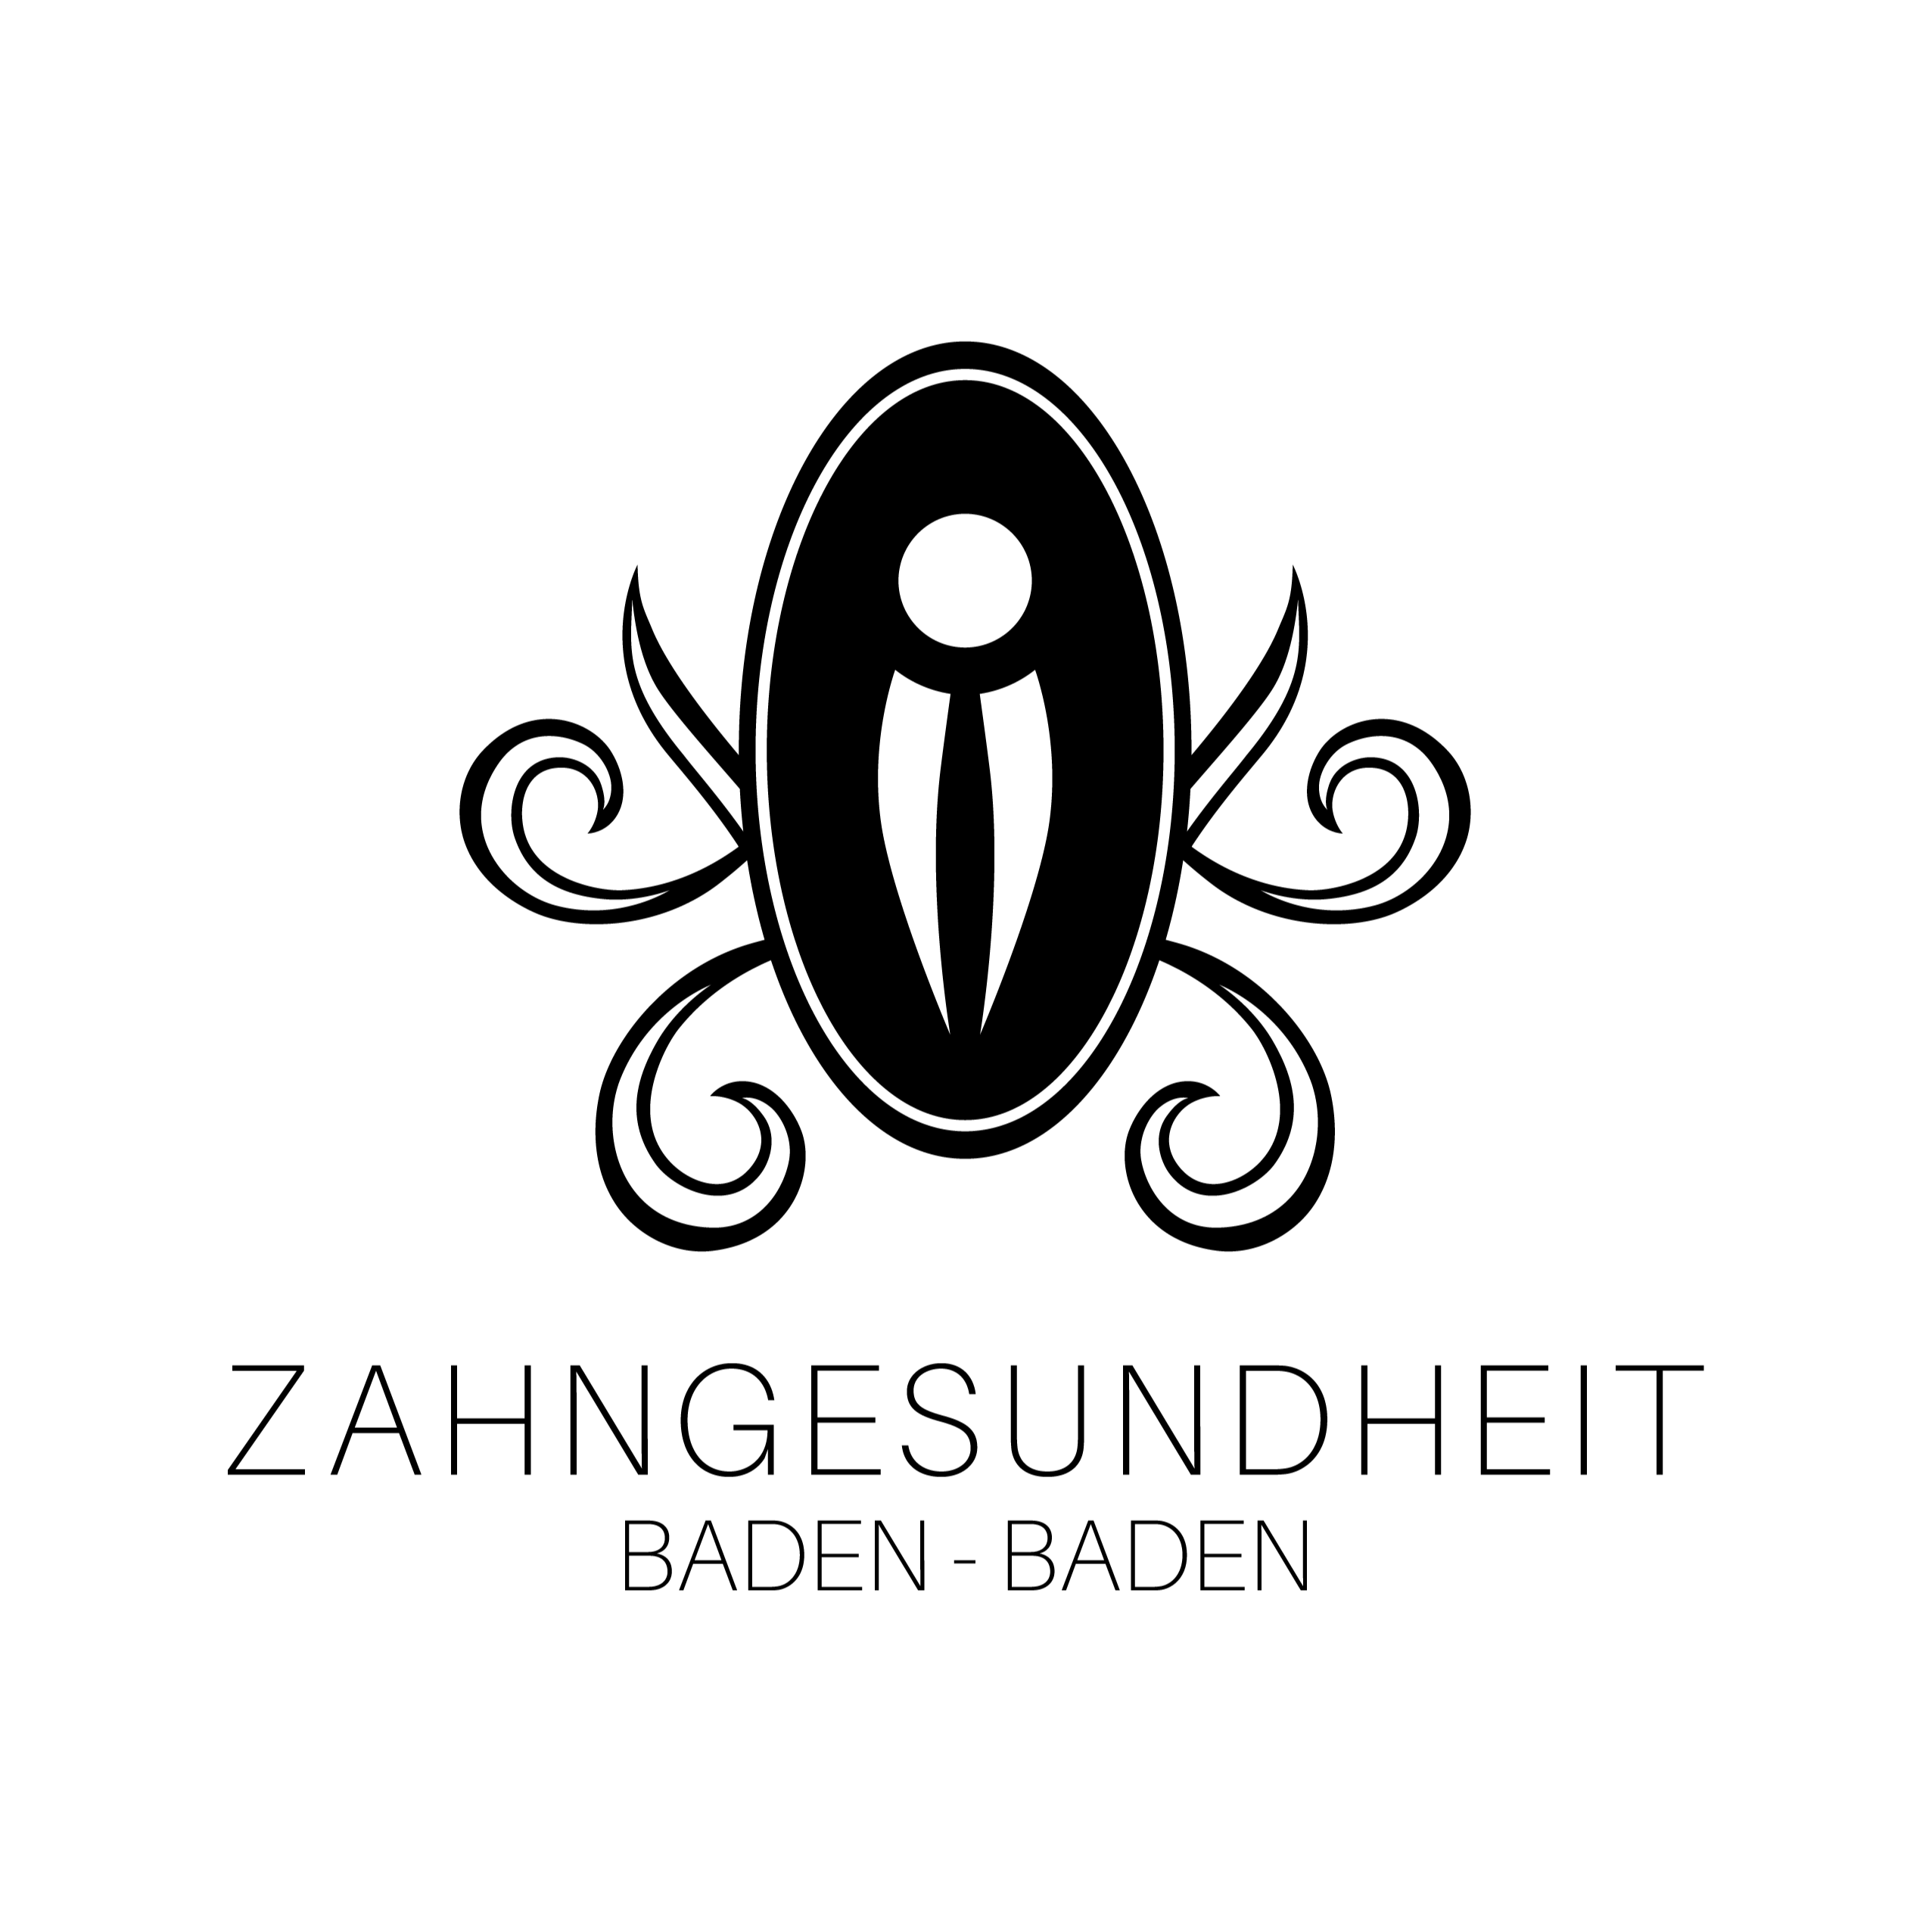 Zahngesundheit Baden-Baden - Prof. Dr. Kamm & Kollegen (Medical Center) Logo